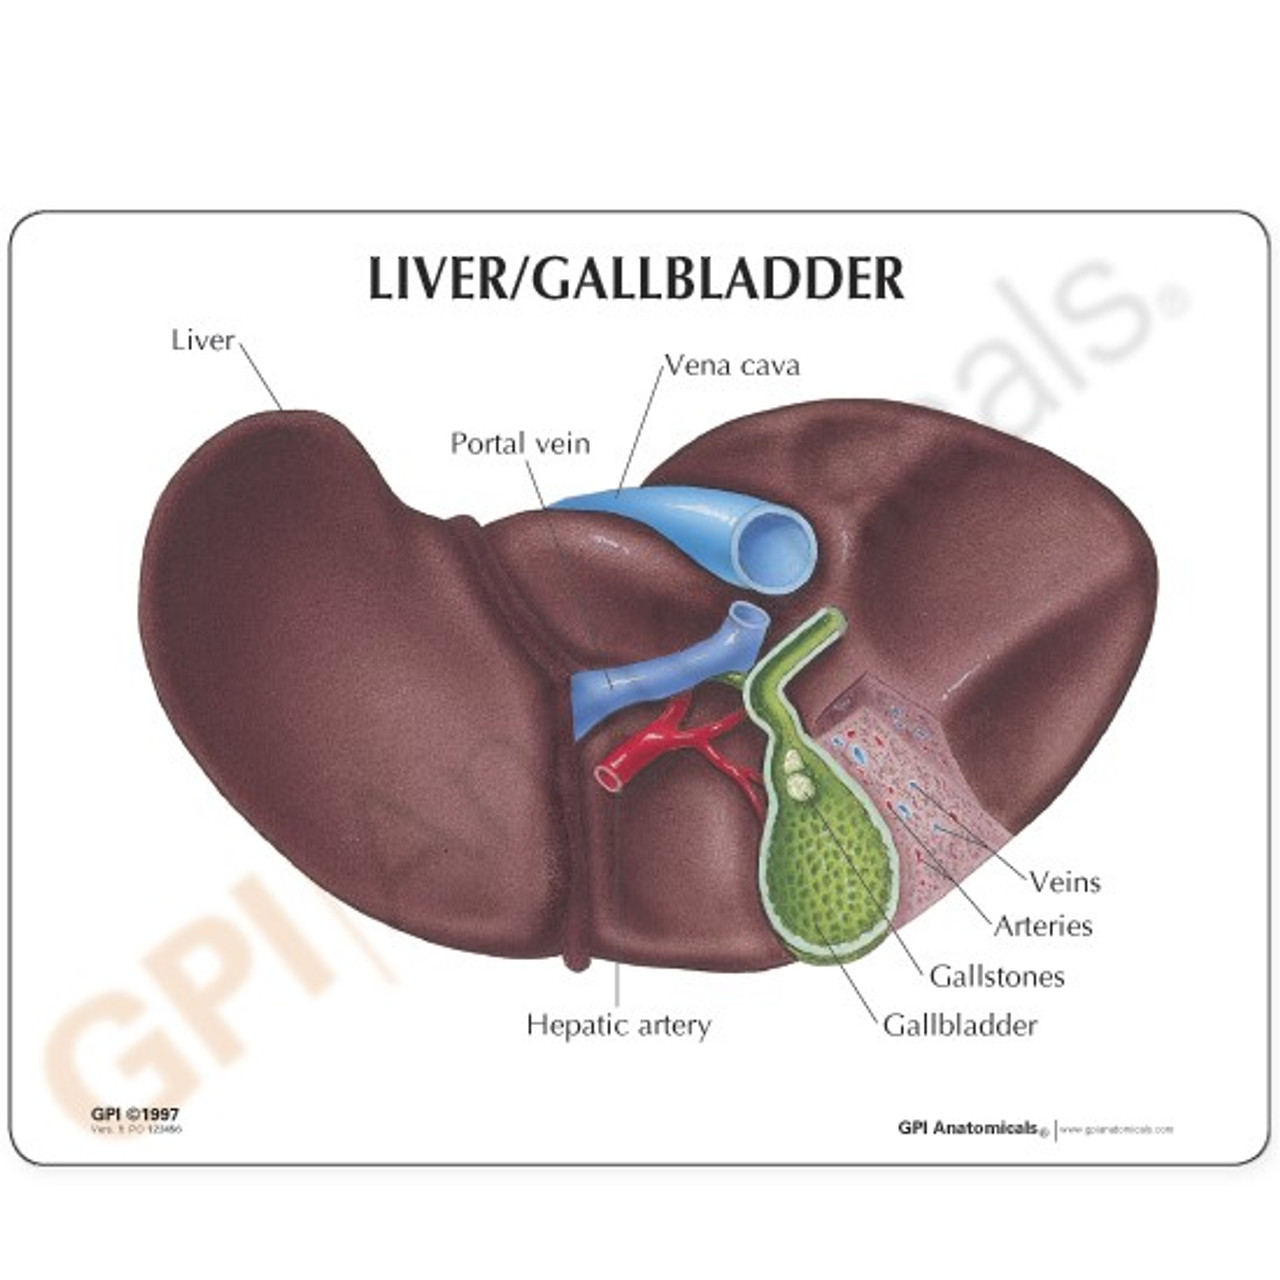 Liver and Gallbladder Description Card